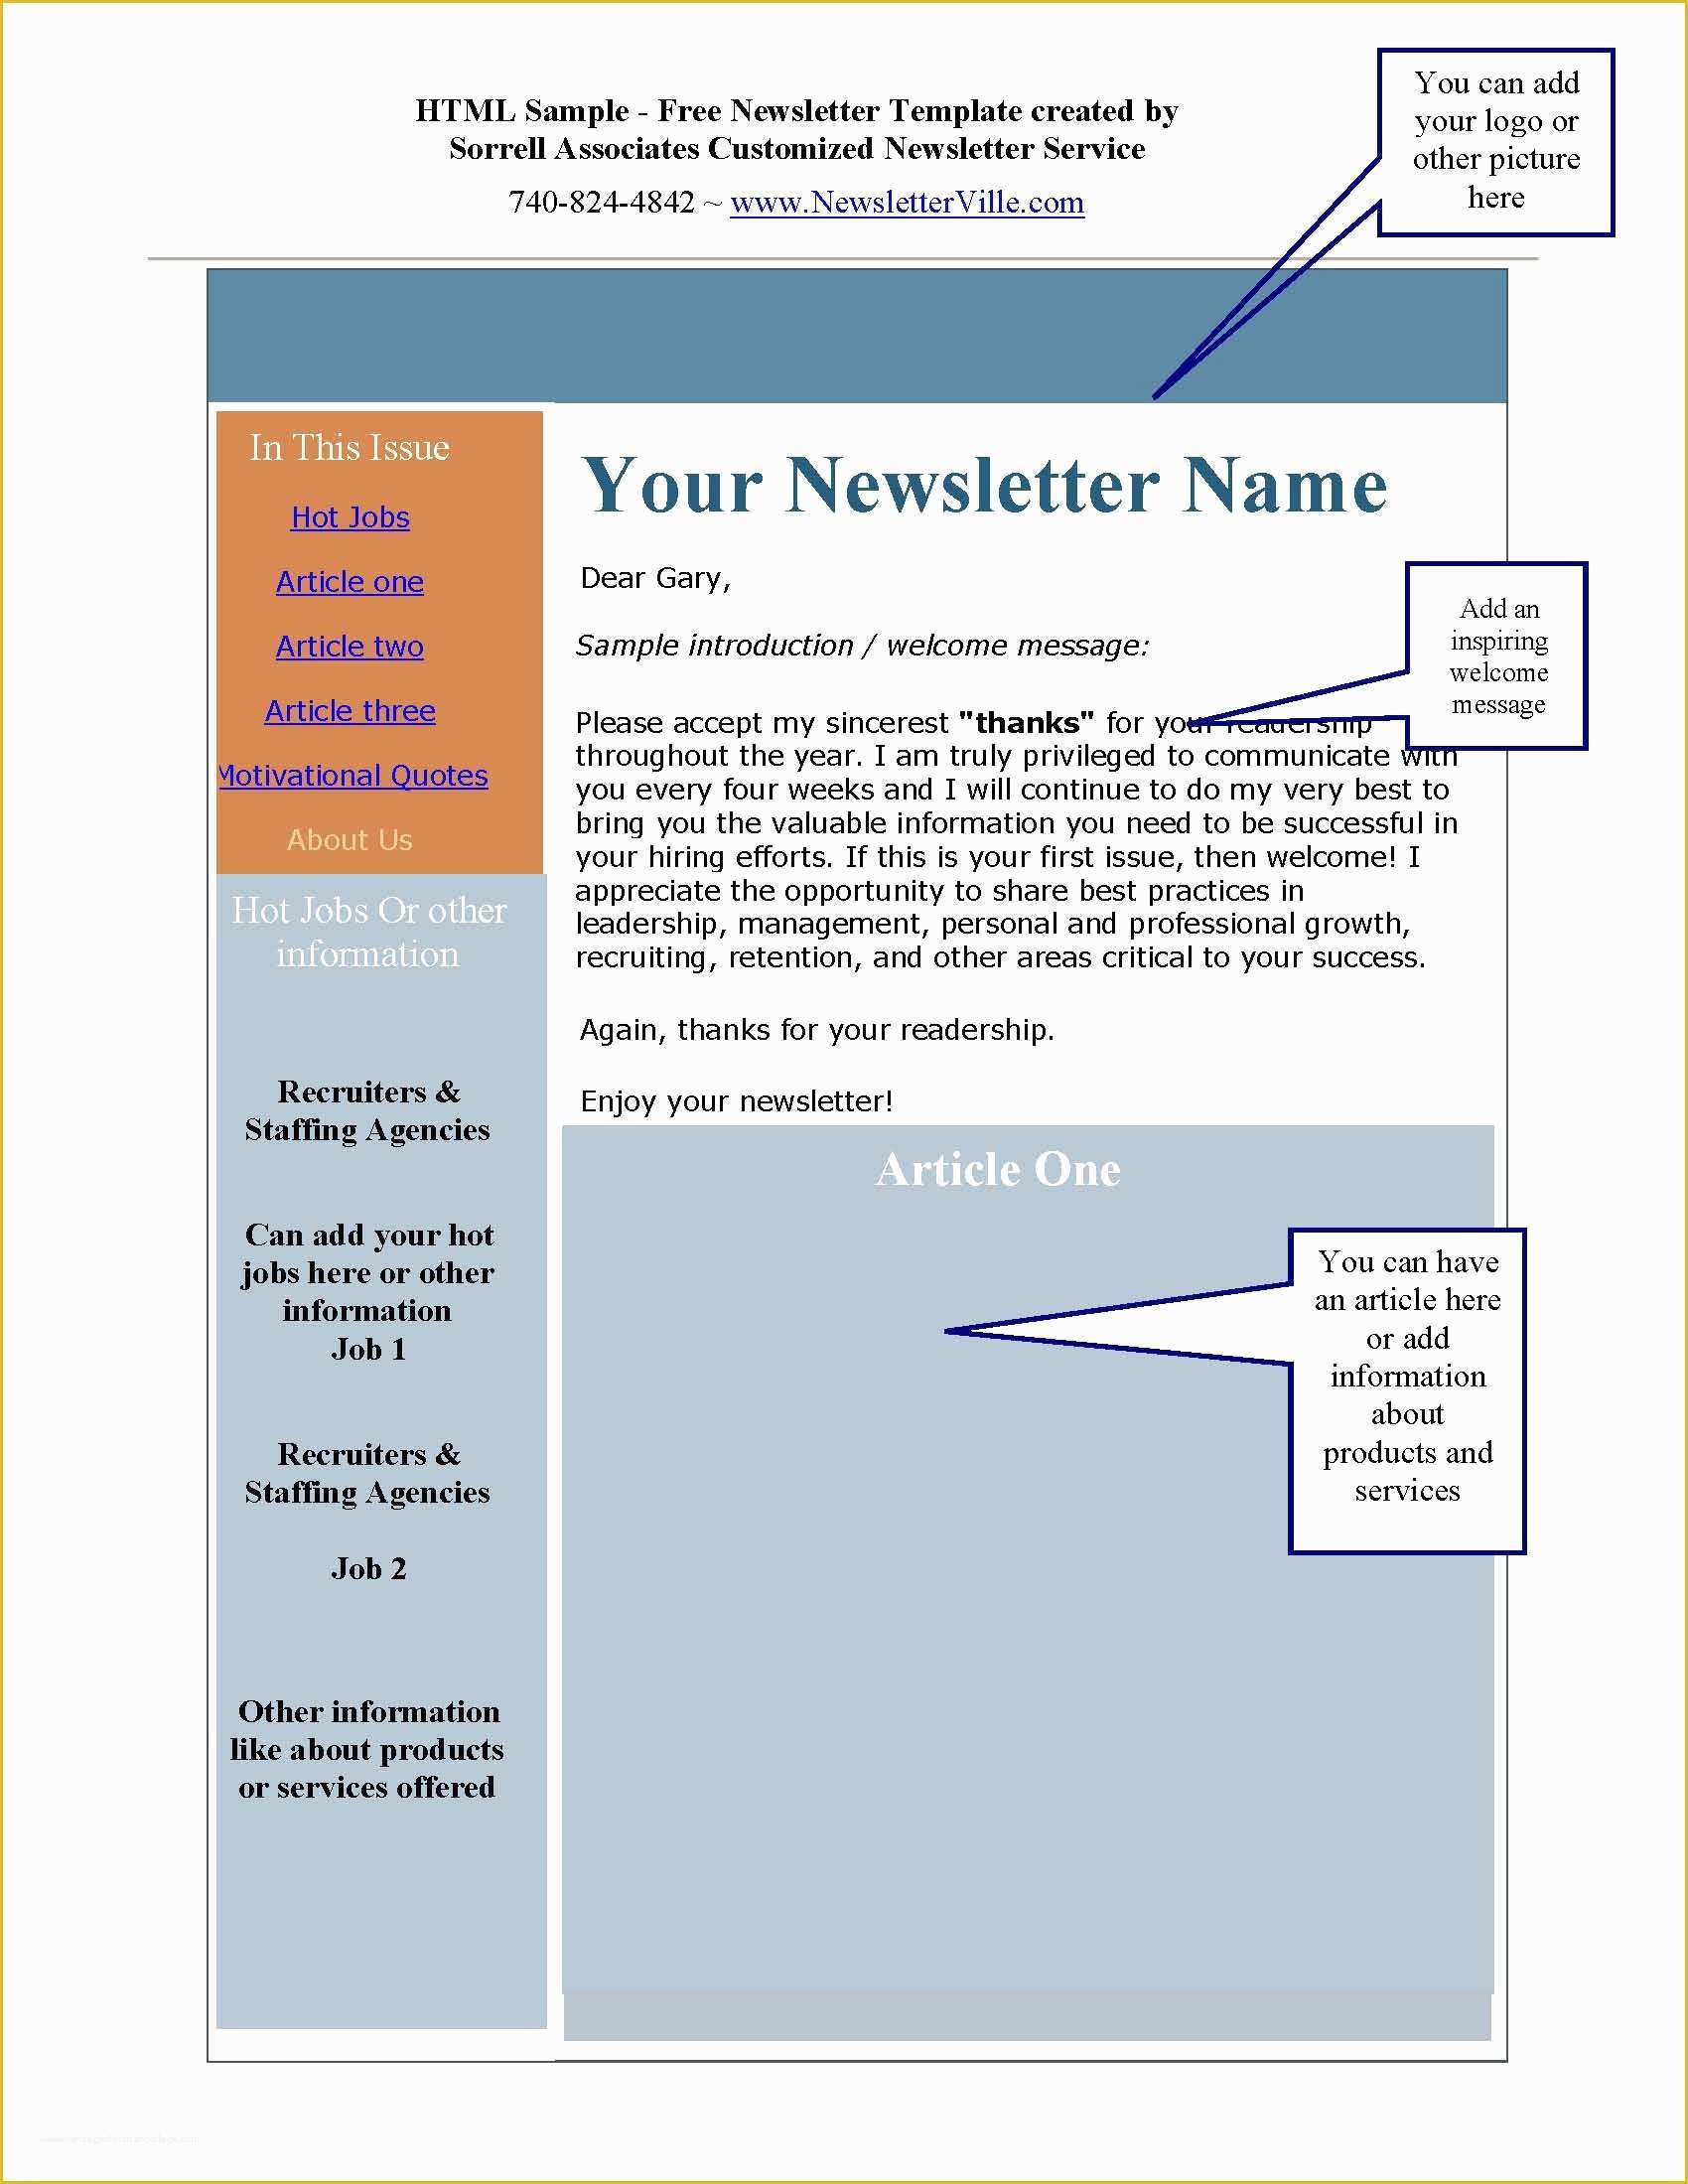 Free Sample Newsletter Templates Of Newsletter &amp; Blog Articles Provided Plus Free Newsletter